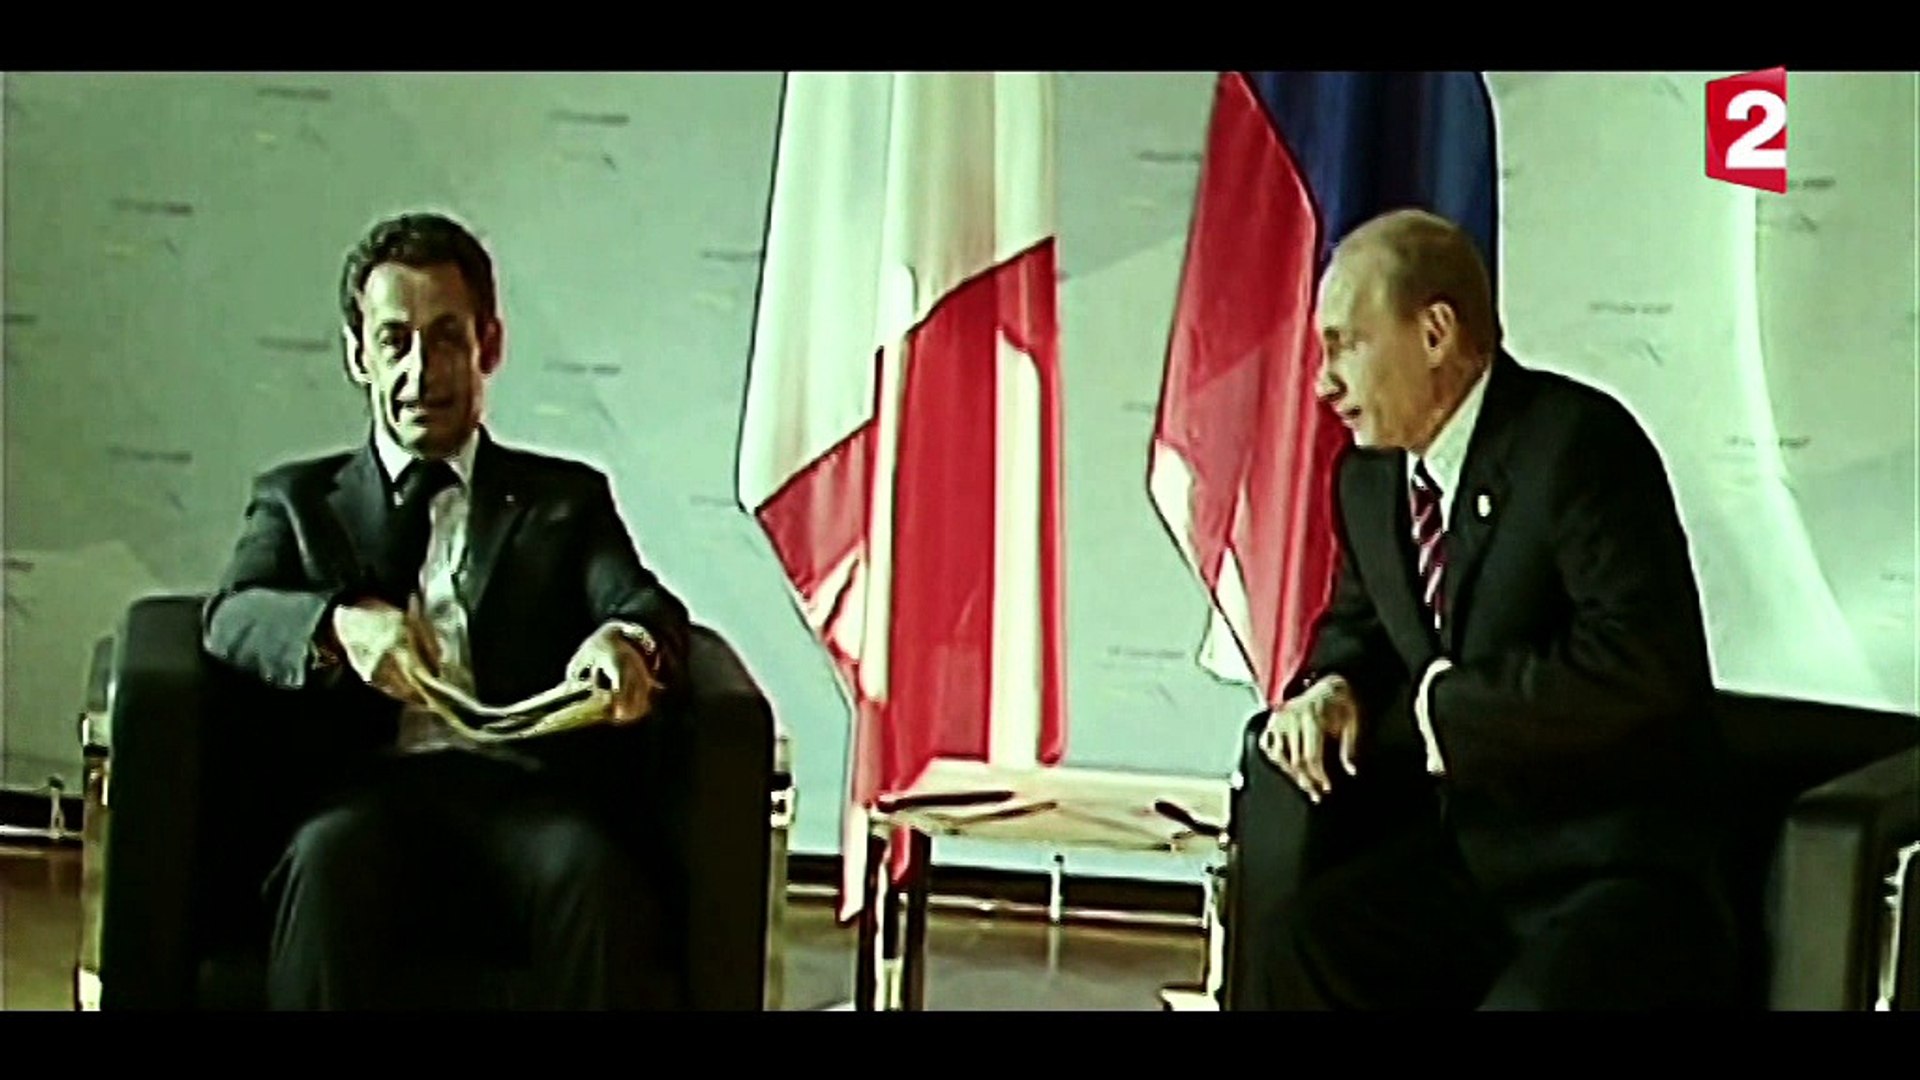 Poutine à Sarkozy : "Si tu continues sur ce ton, je t'écrase" ! JEUDI 20H55  : Le mystère Poutine (dans le cadre de la soirée Vladimir Poutine) Extrait  3 - Vidéo Dailymotion